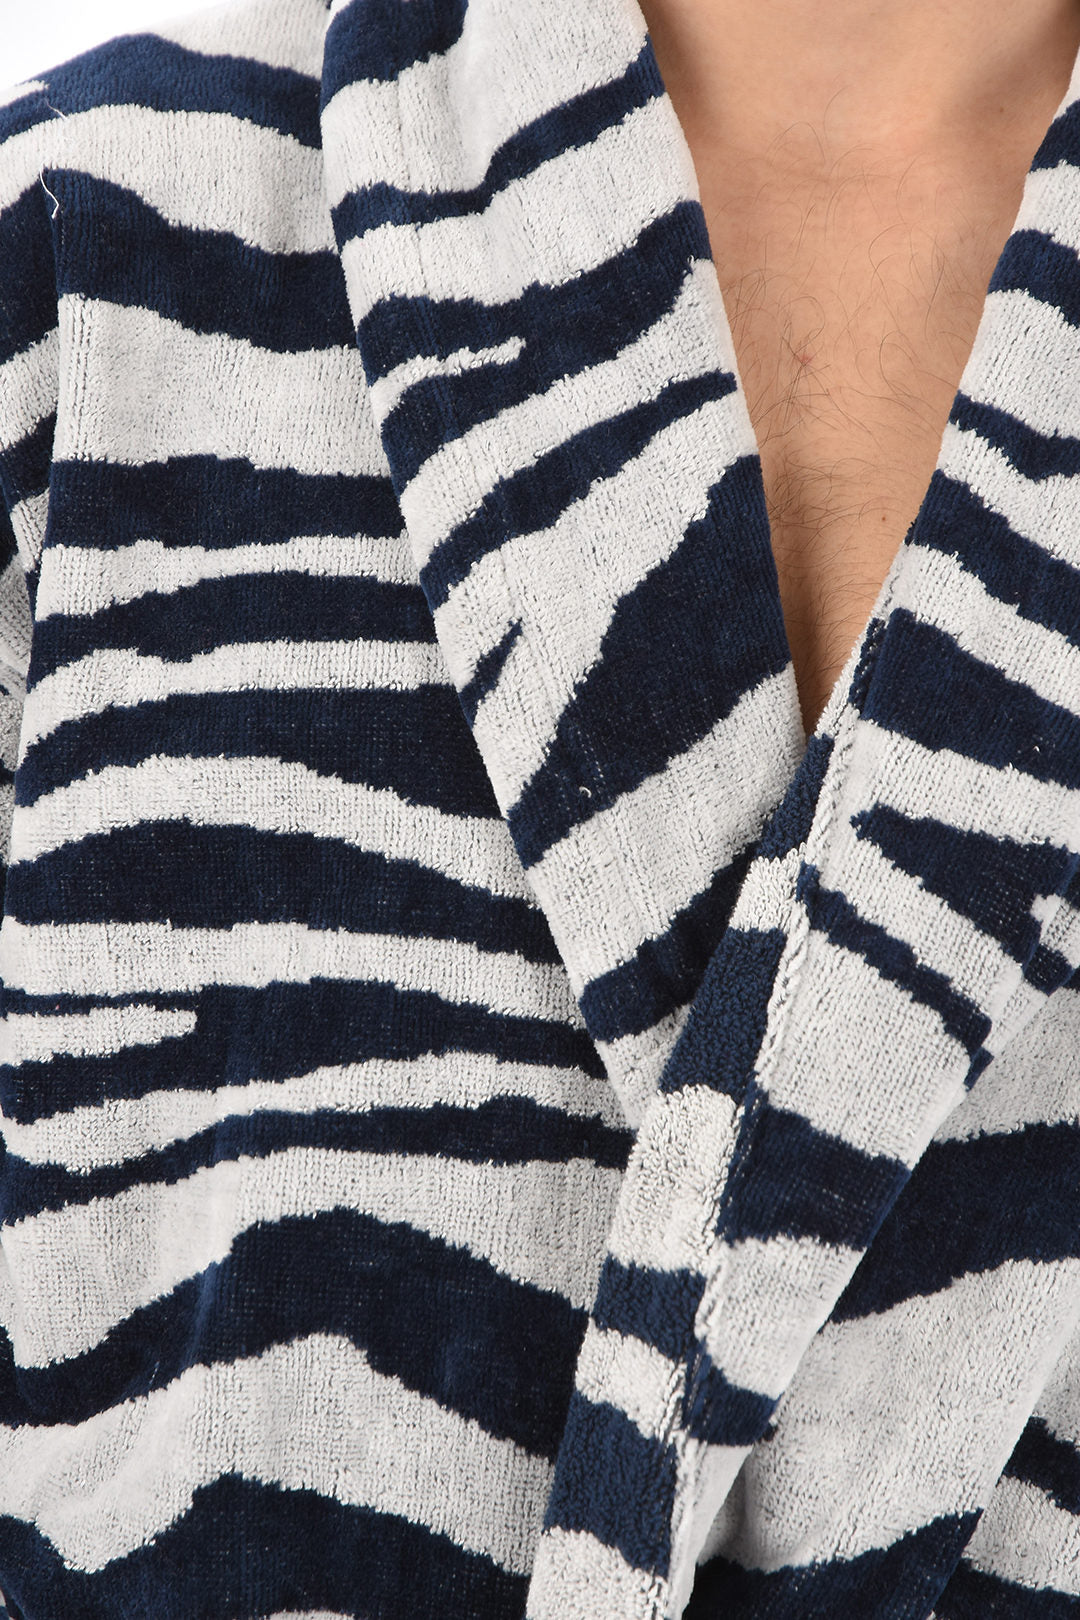 Home Blauer Frottee-Bademantel mit Zebradruck